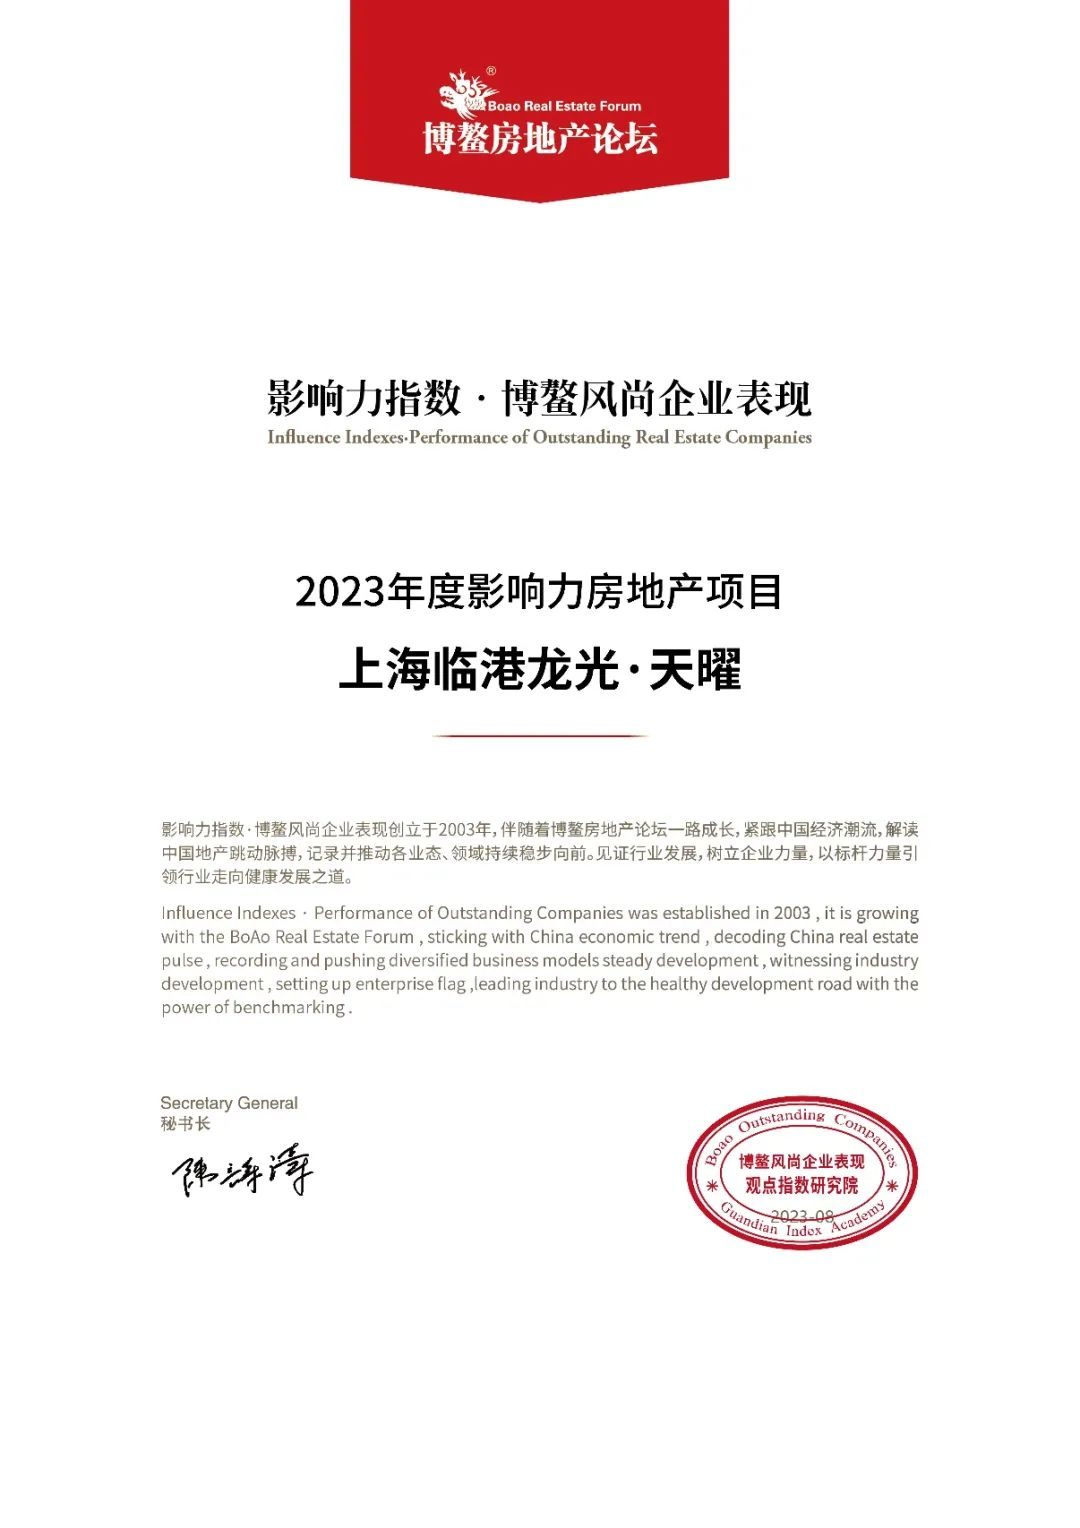 龙光集团旗下上海天曜项目入选“2023年度影响力房地产项目”_中国网地产